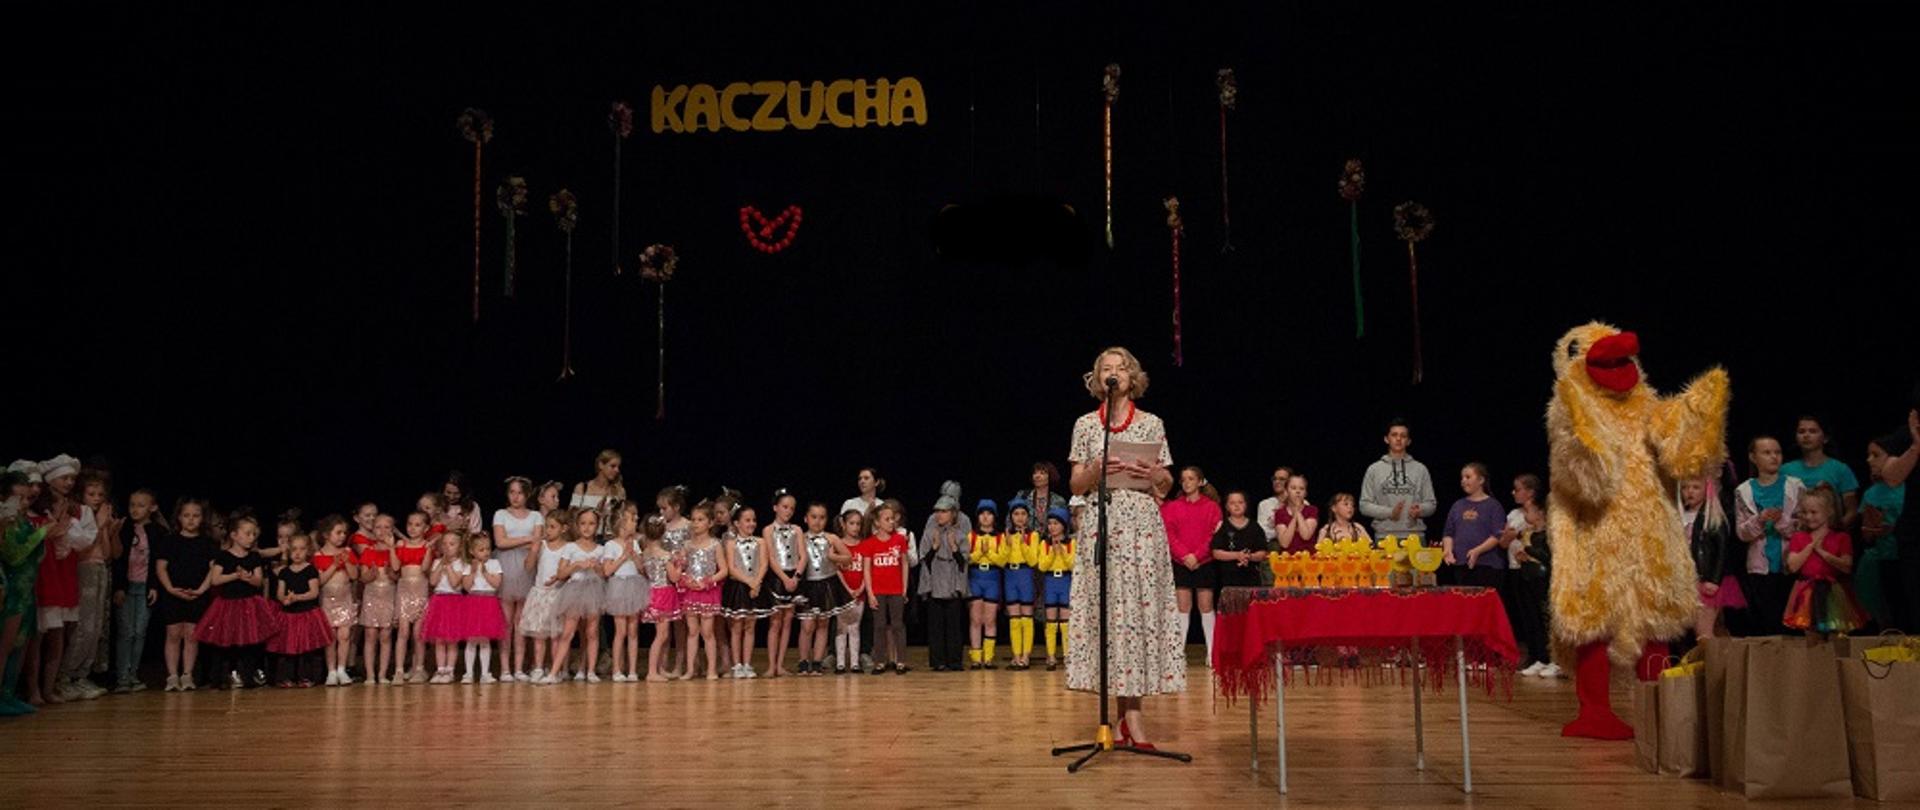 Na scenie stoi grupa dzieci podczas Przeglądu Kaczucha. Prawej stronie stoi osoba przebrana w żółty strój kaczki. Na środku stoi kobieta przemawiająca przez mikrofon.